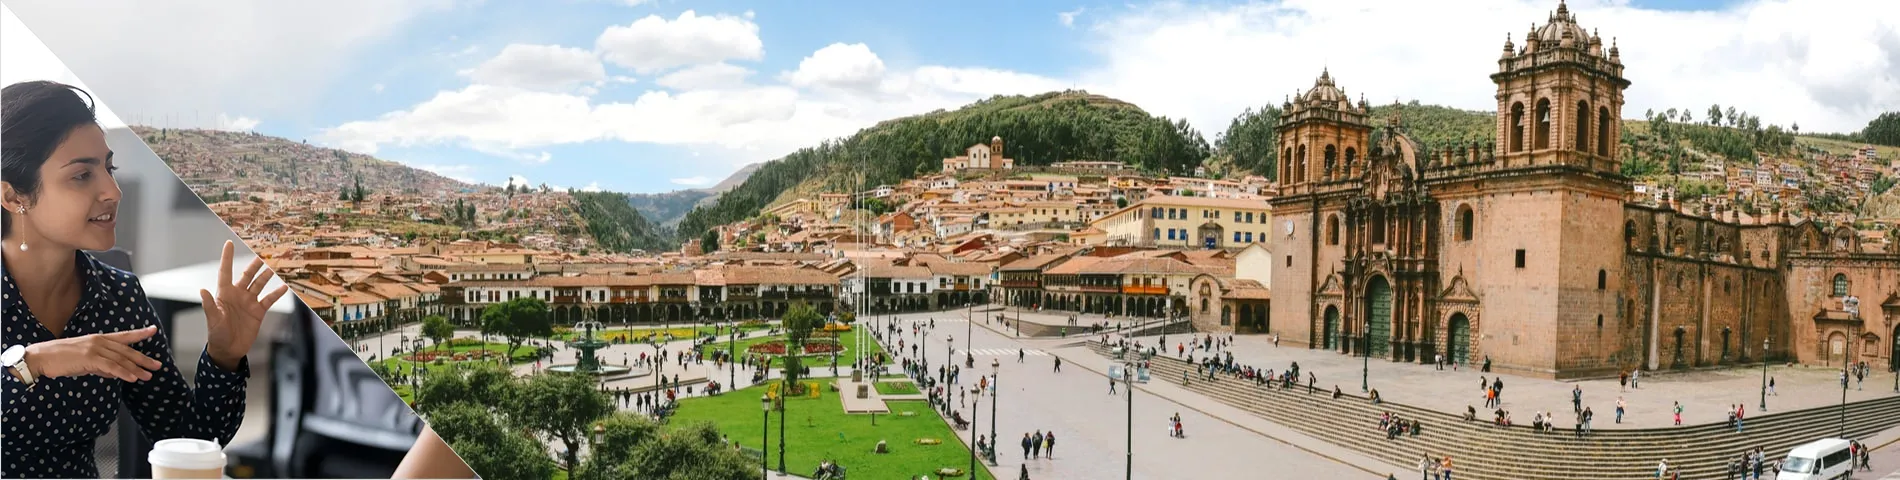 Cuzco - Konwersacje / komunikacja